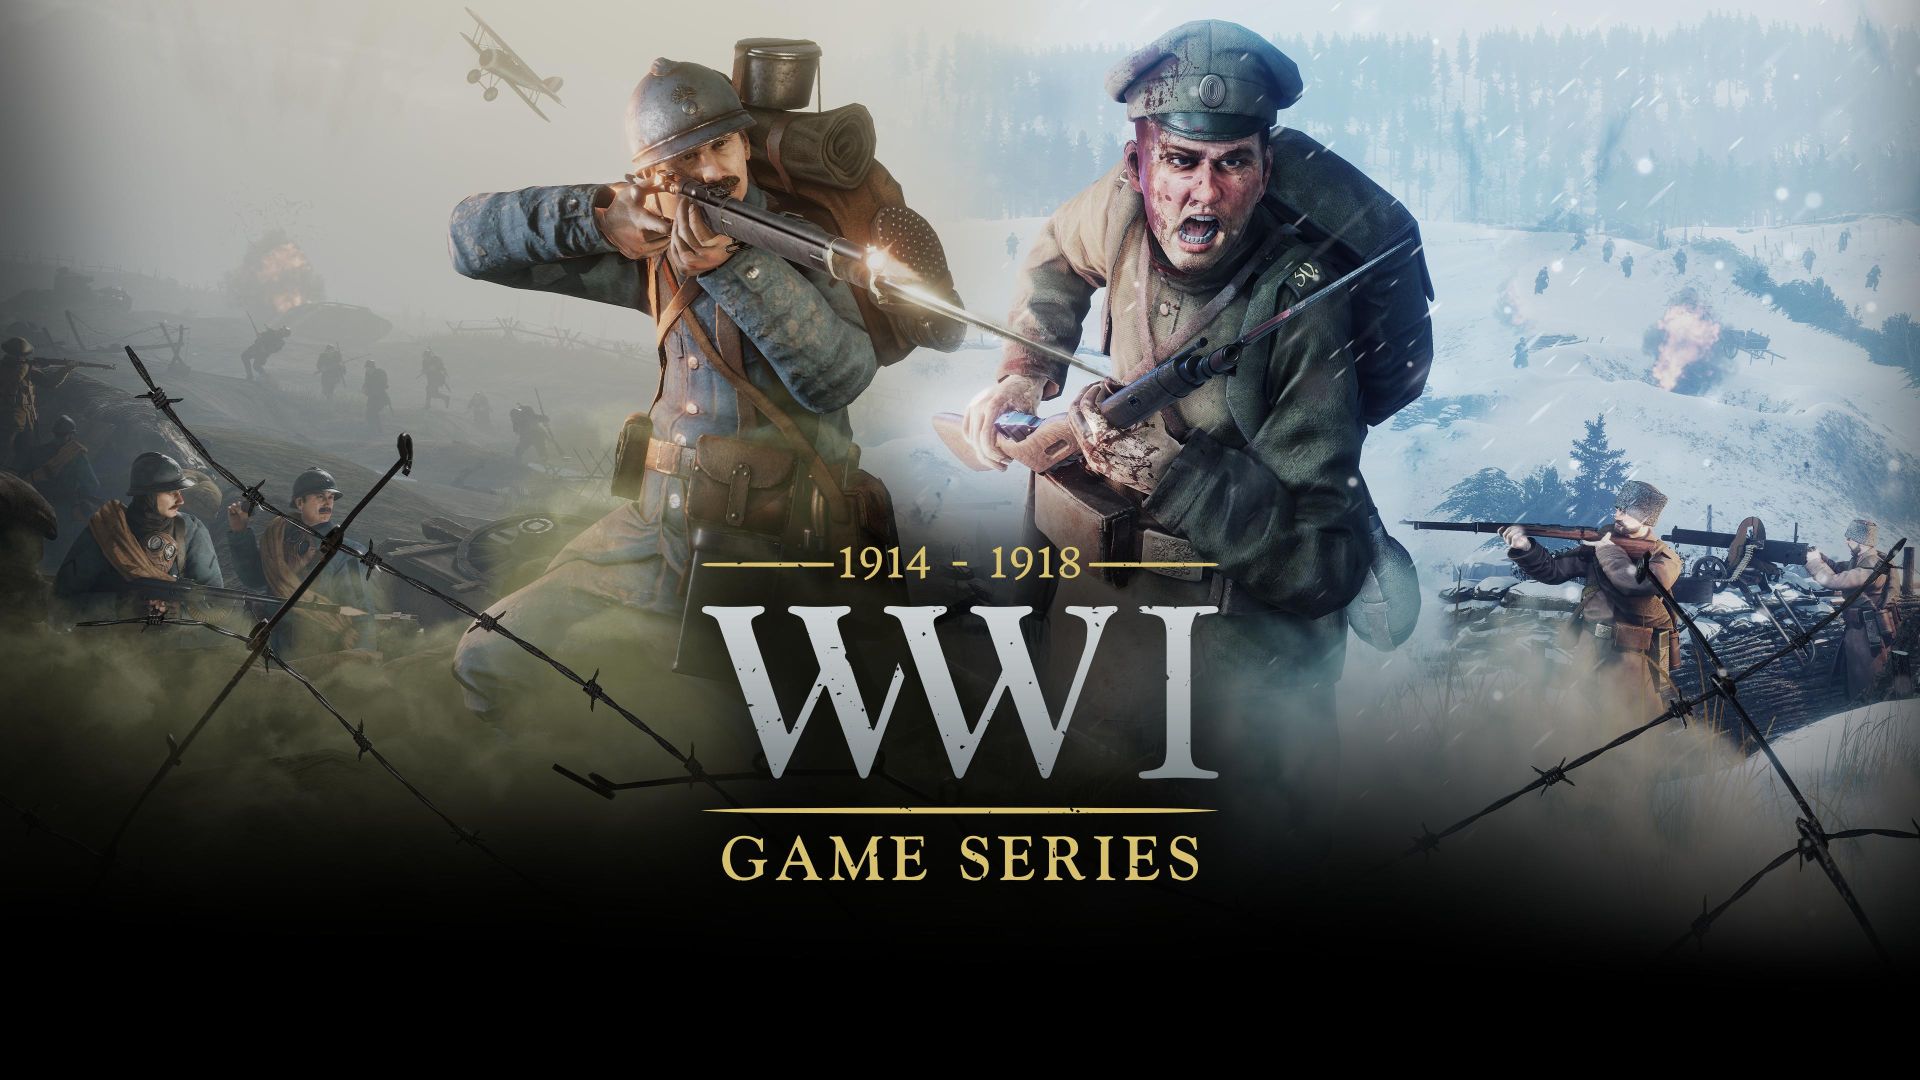 第1次世界大戦を描いたfps ヴェルダン と タンネンベルク のps4版が本日リリース 2本セットのww1ゲームシリーズバンドルも同時発売